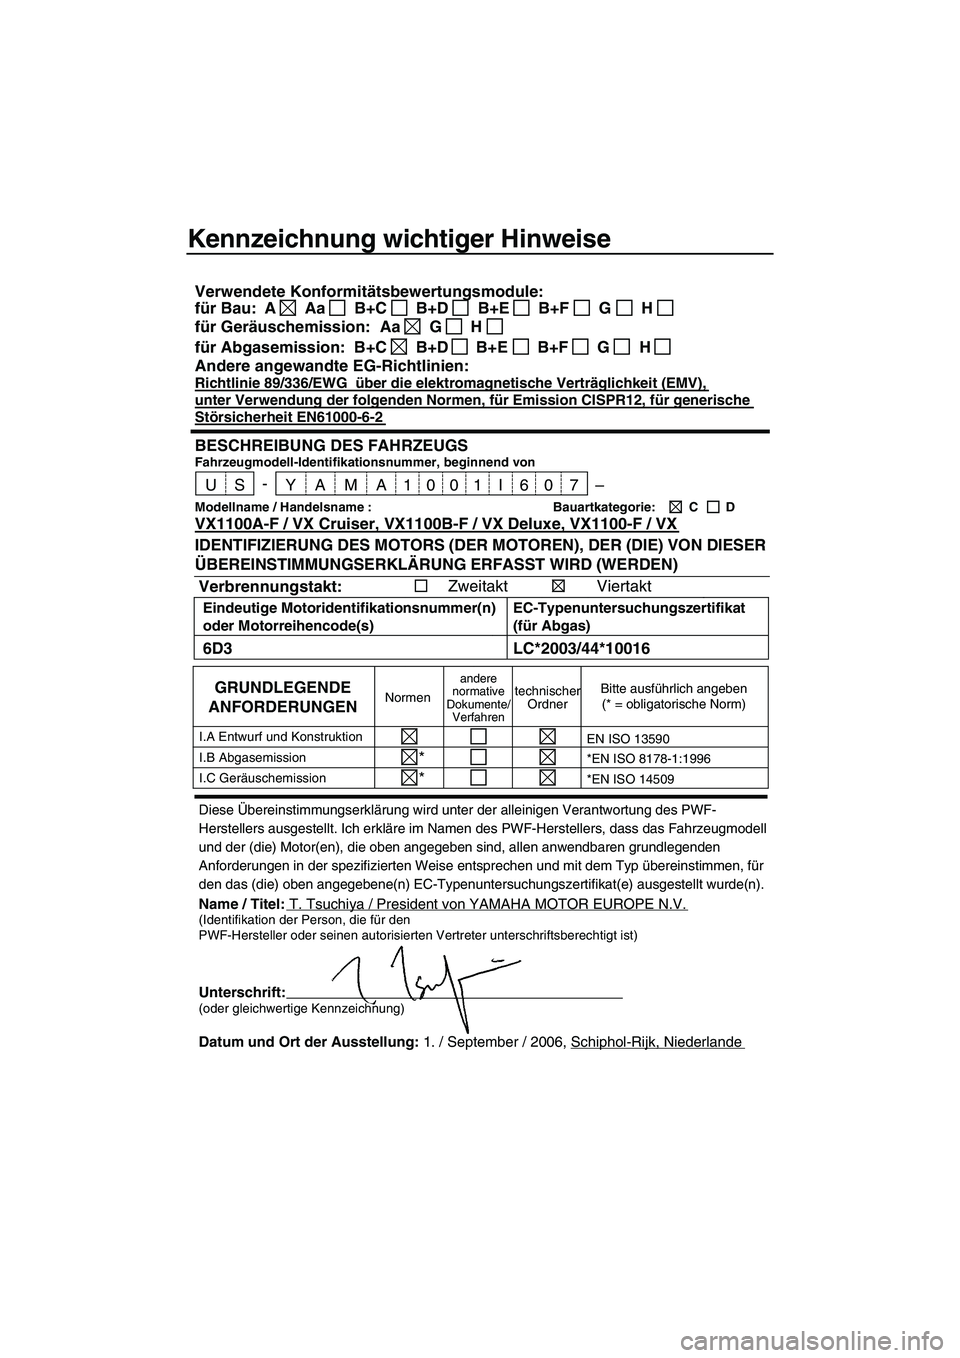 YAMAHA VX 2007  Betriebsanleitungen (in German) Kennzeichnung wichtiger Hinweise
Diese Übereinstimmungserklärung wird unter der alleinigen Verantwortung des PWF-
Herstellers ausgestellt. Ich erkläre im Namen des PWF-Herstellers, dass das Fahrzeu